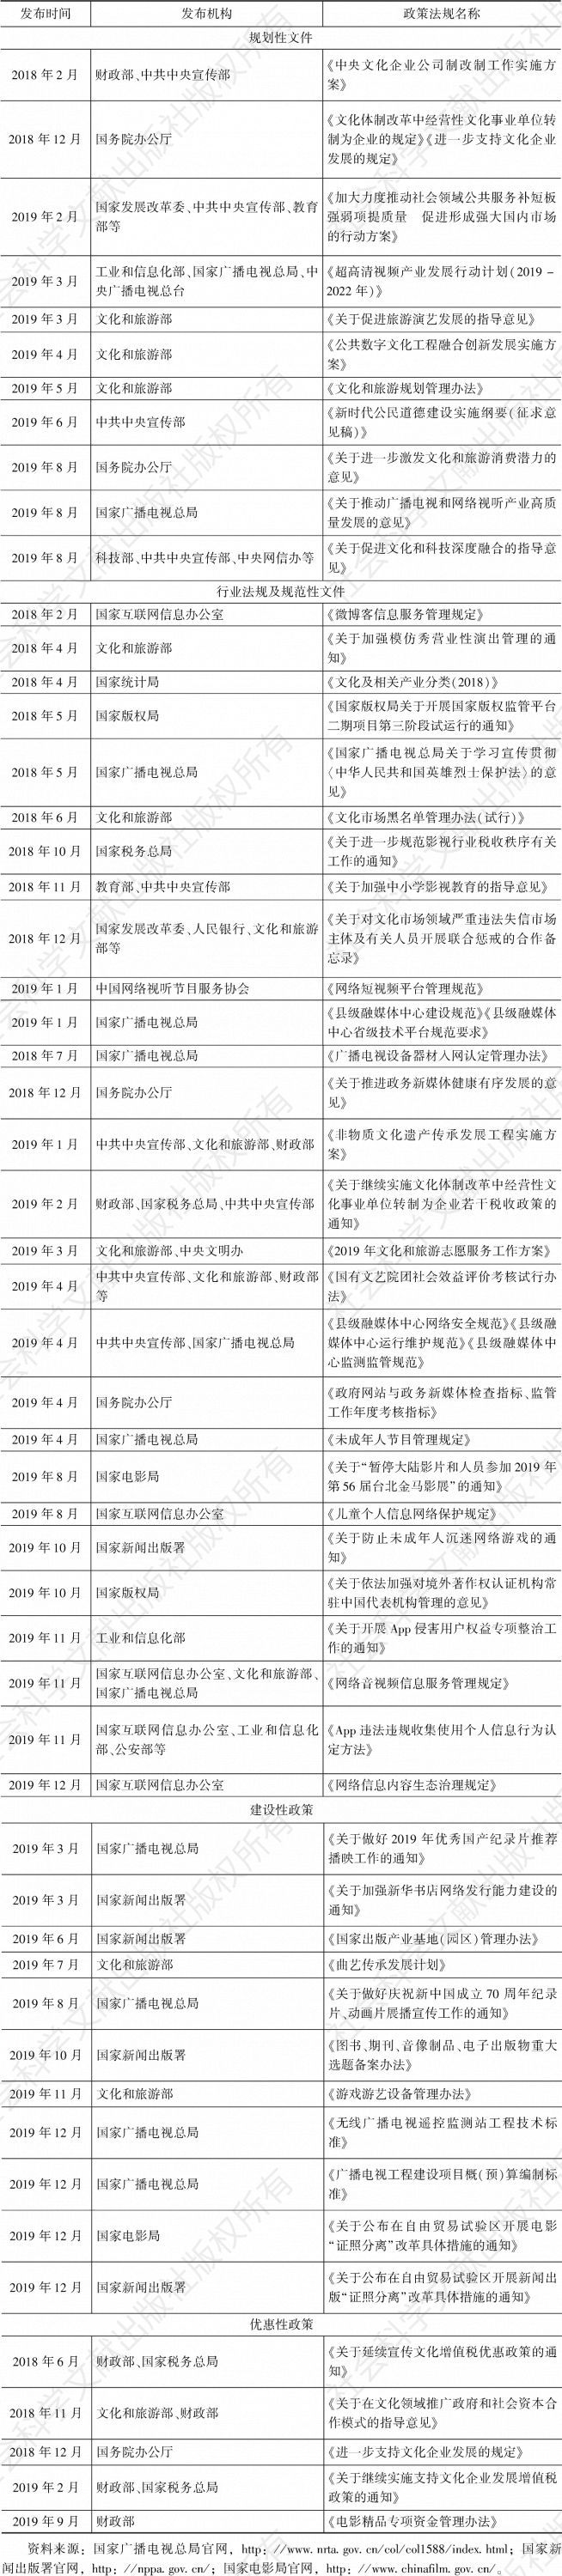 表3 2018～2019年中国文化传播重要政策法规一览